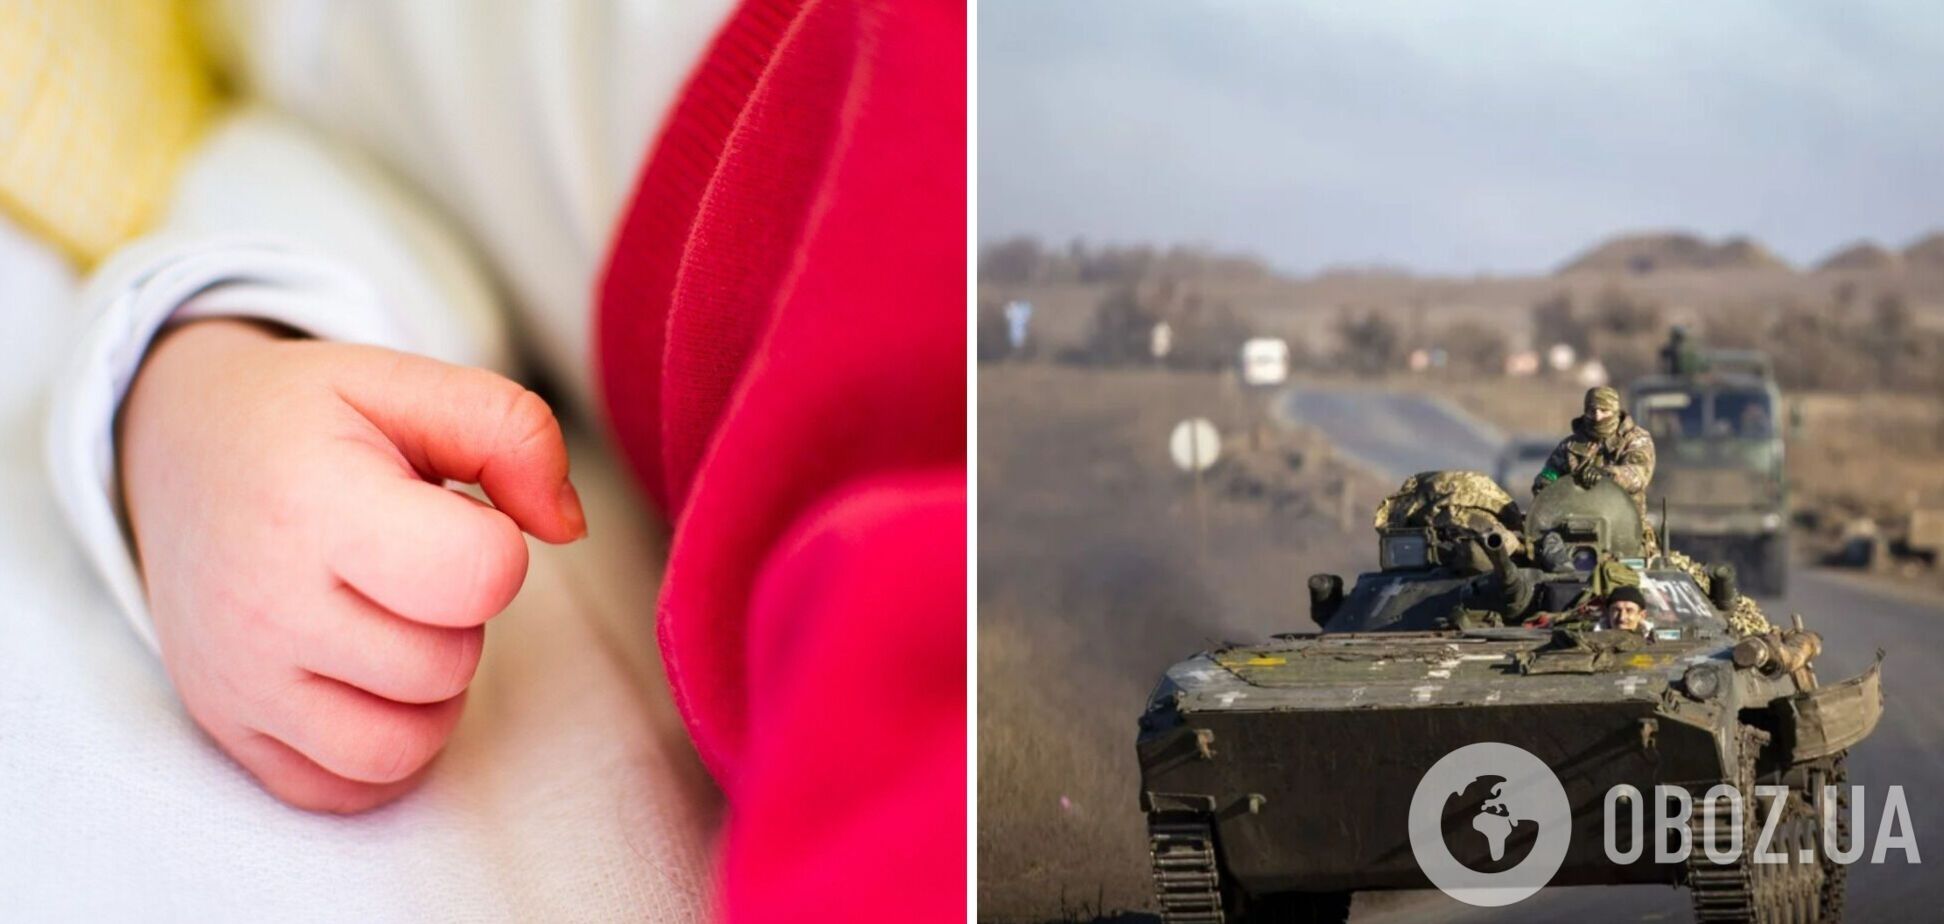 Спасать было некому: в России ребенок умер, потому что всех врачей забрали на войну в Украине